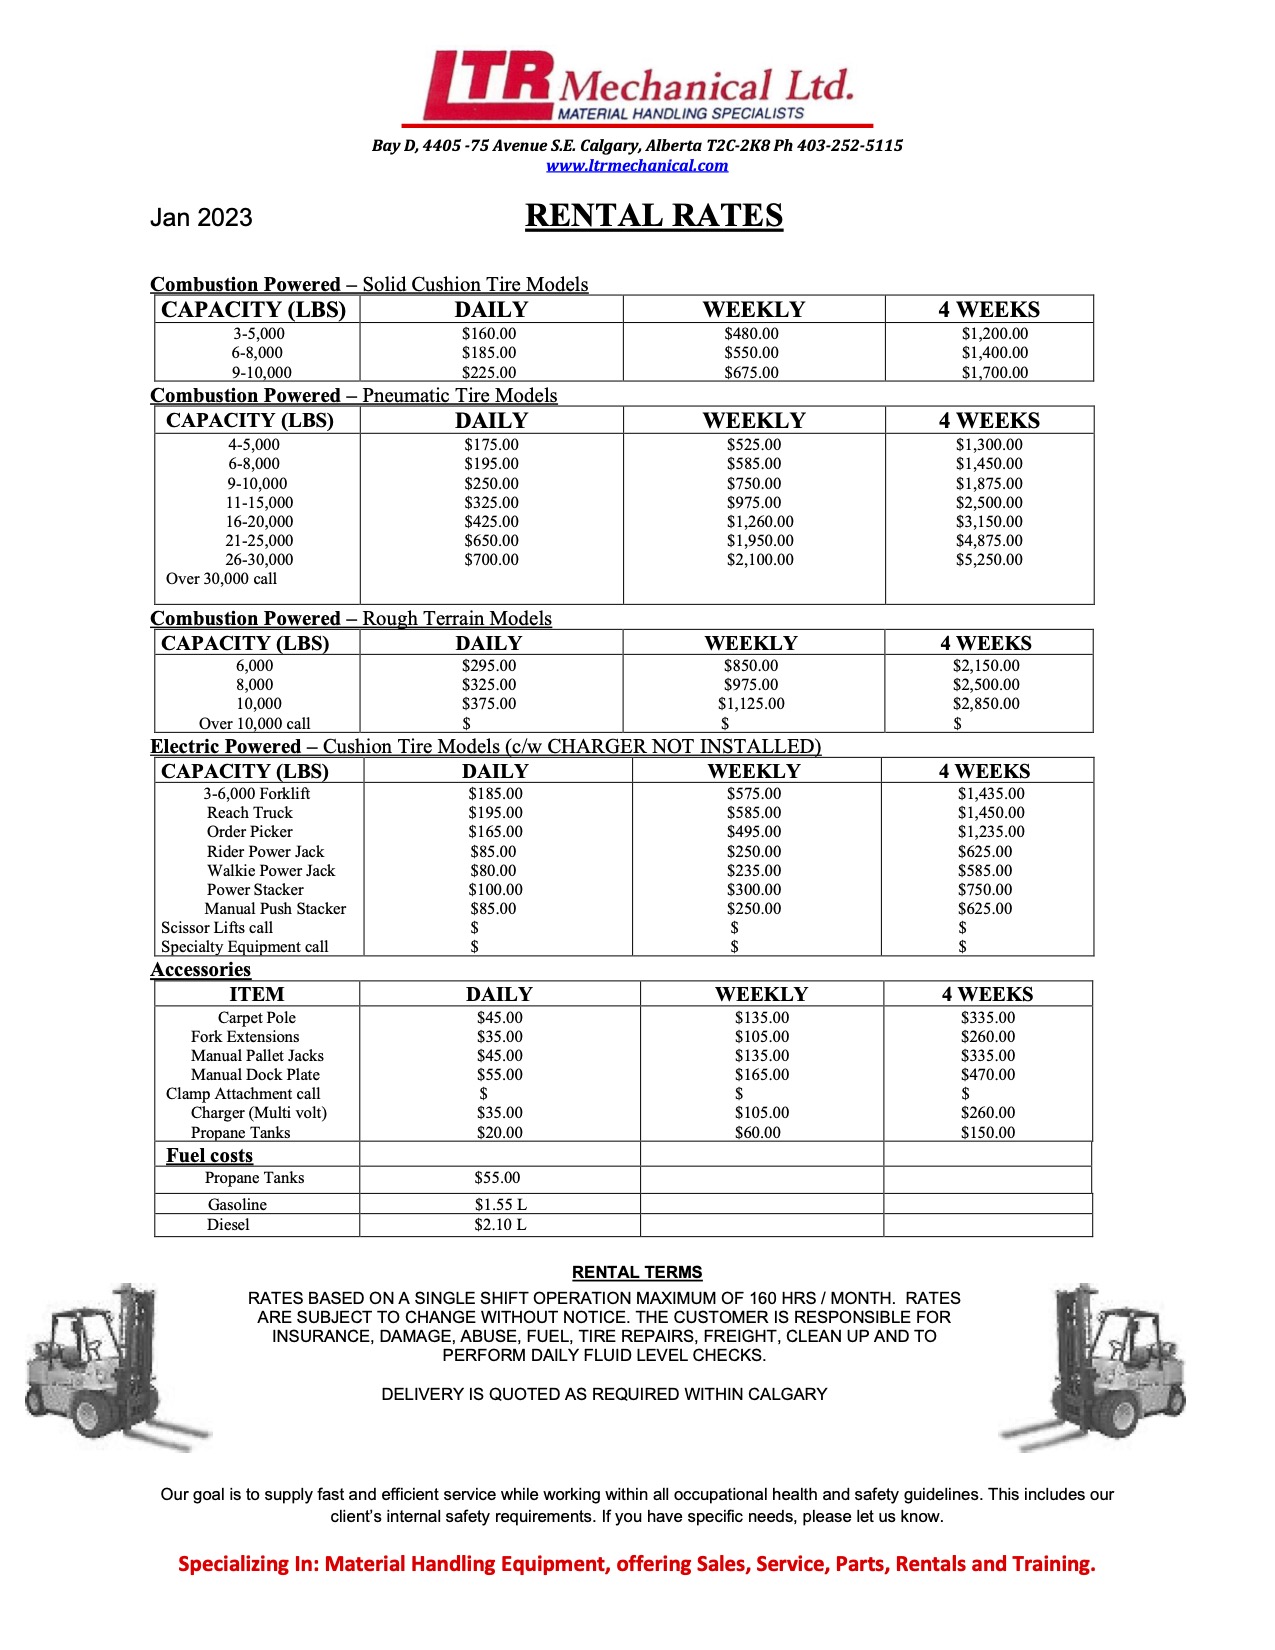 Rental Rates Image